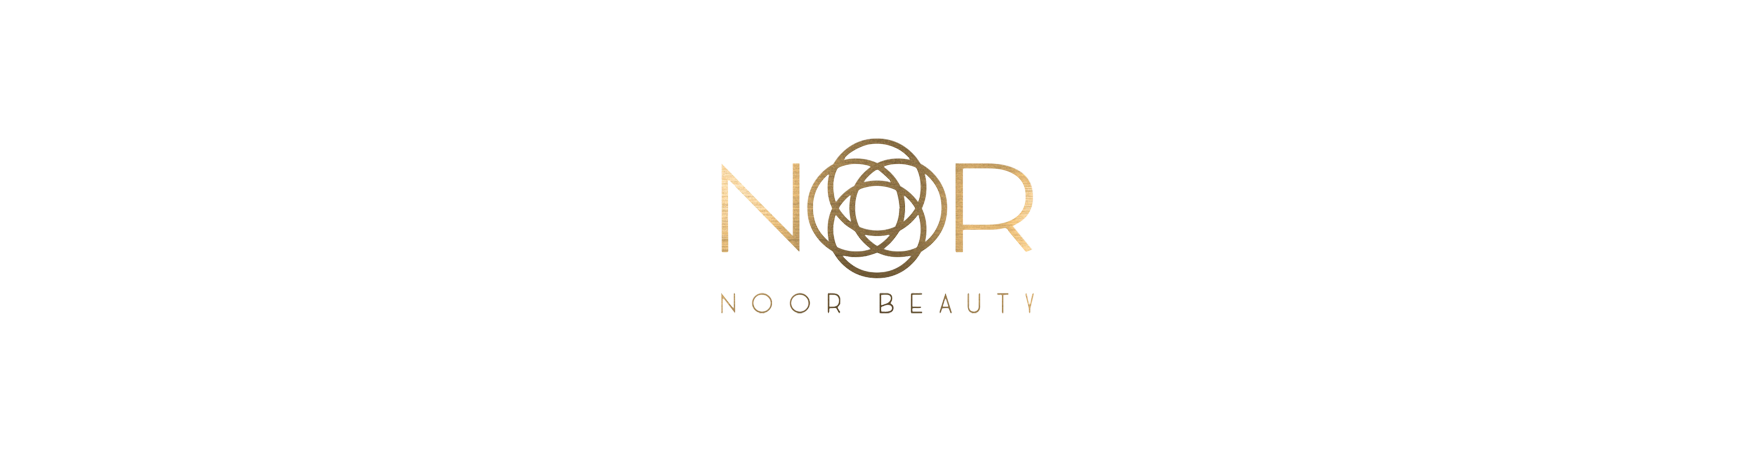 Noor Beauty